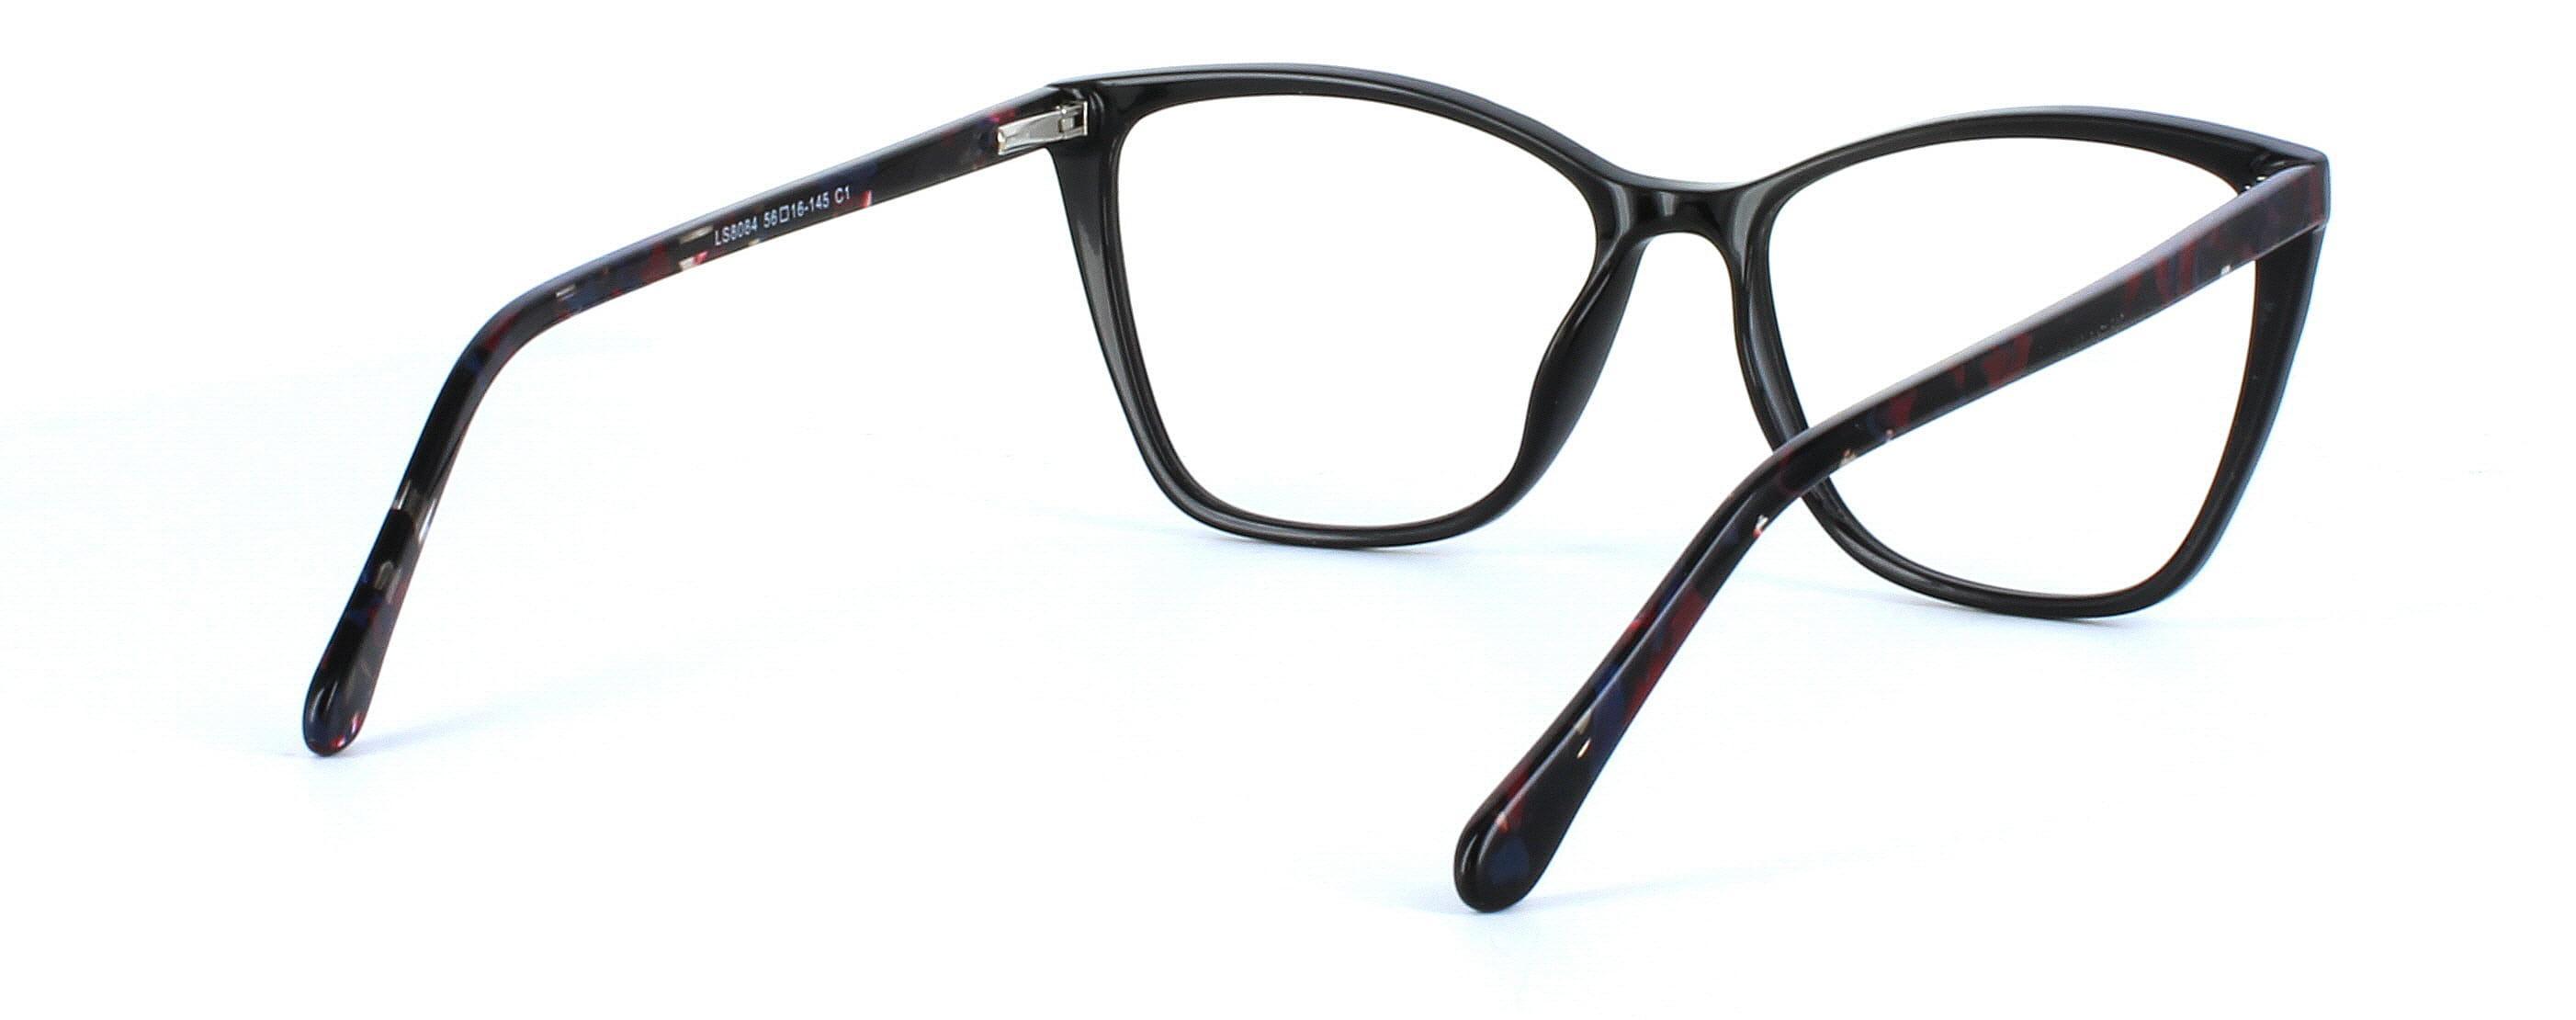 Cetus - ladies cat eye shaped glasses frame in black - image 4